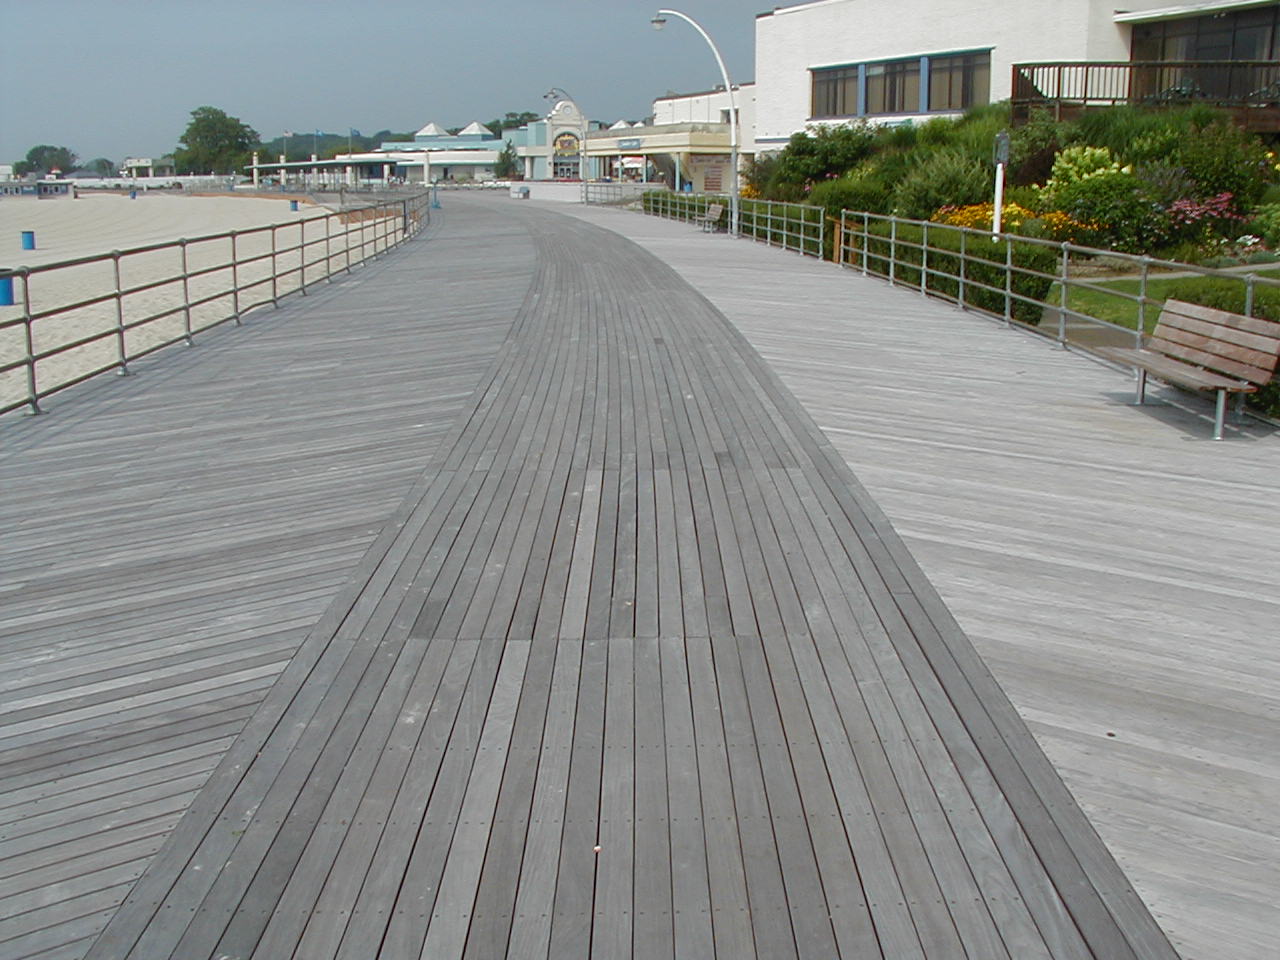 Ipe deck at Ocean Beach Boardwalk New London, CT